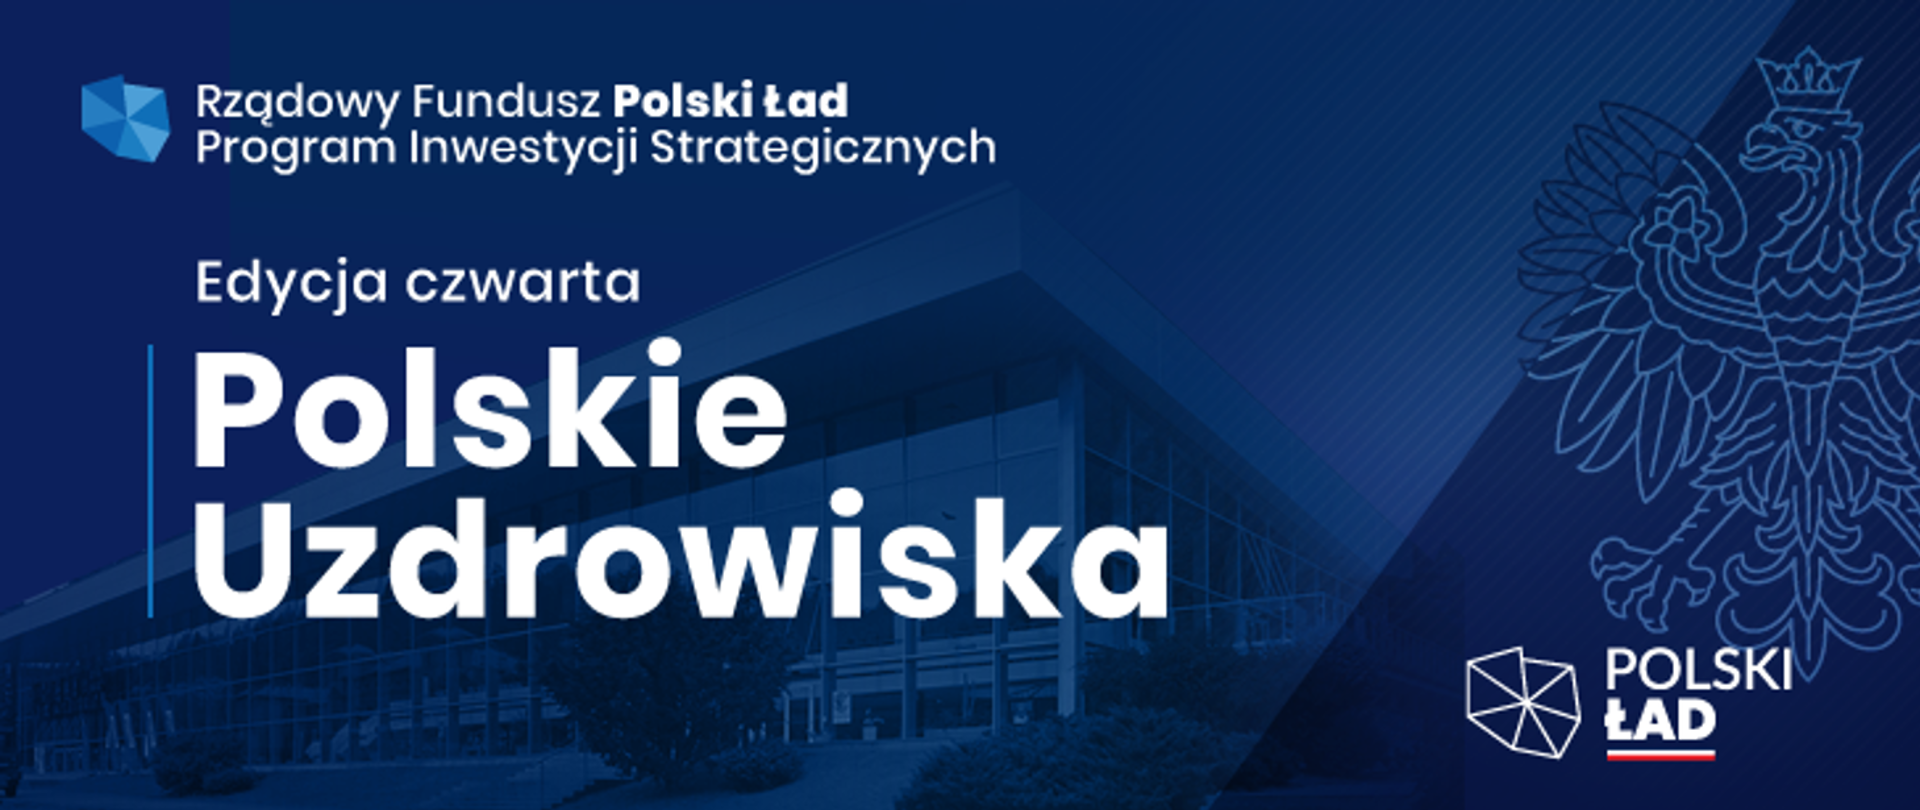 Rządowy Fundusz Polski Ład - Program Inwestycji Strategicznych. Czwarta edycja - polskie uzdrowiska